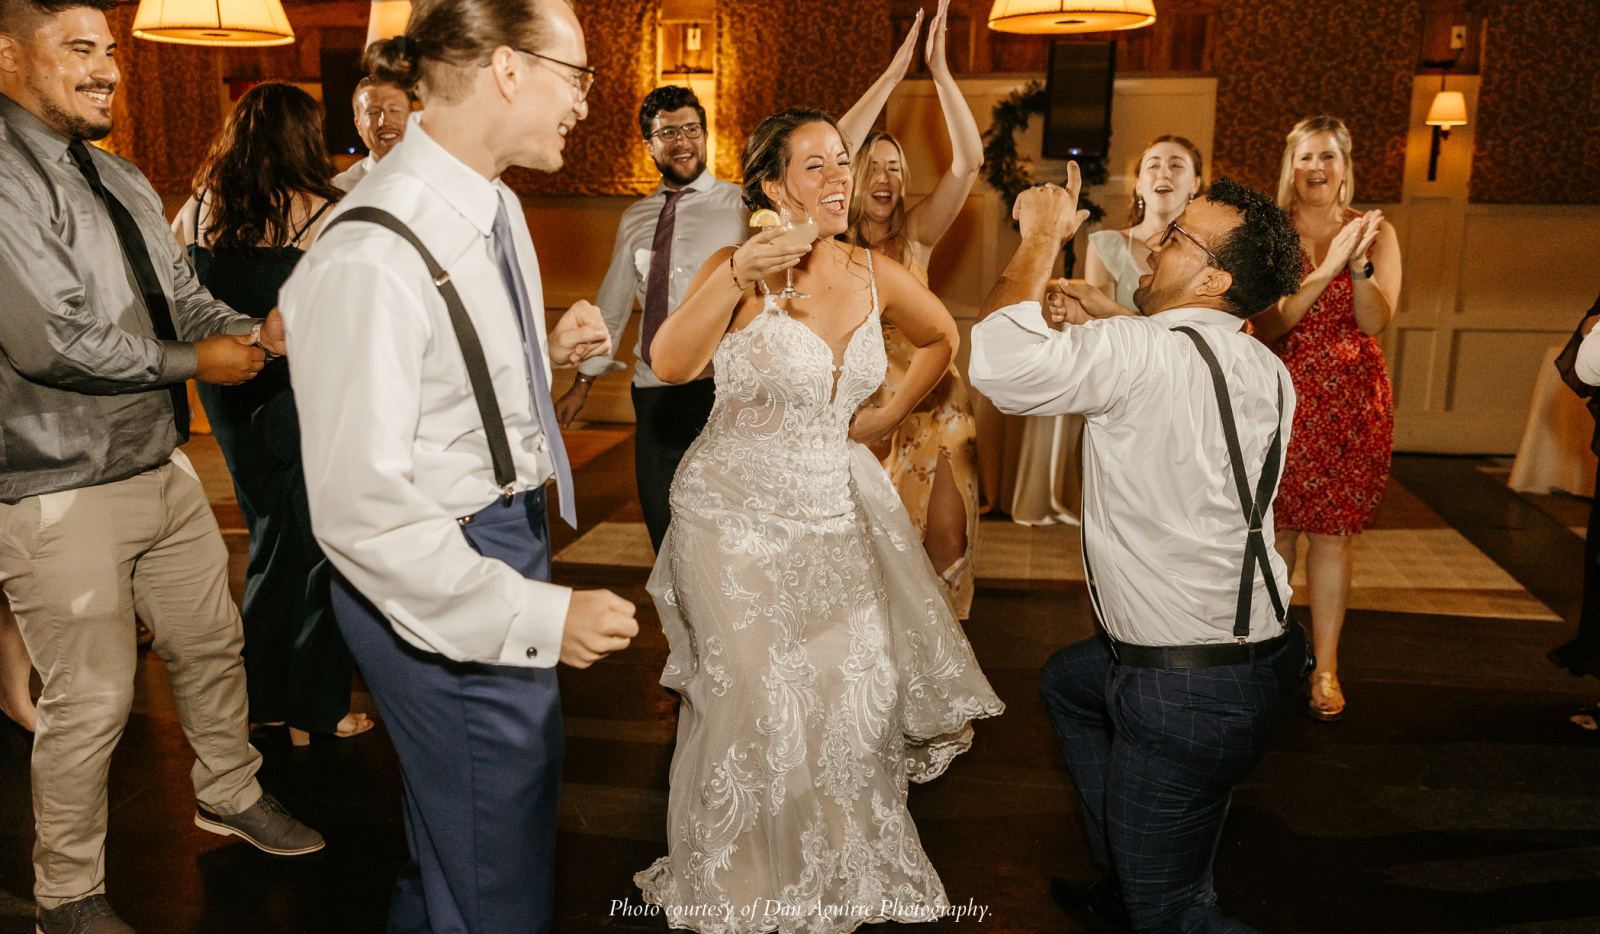 https://www.barnatgibbethill.com/wp-content/uploads/2023/04/Barn-at-Gibbet-Hill-wedding-dance-floor-fun.jpg